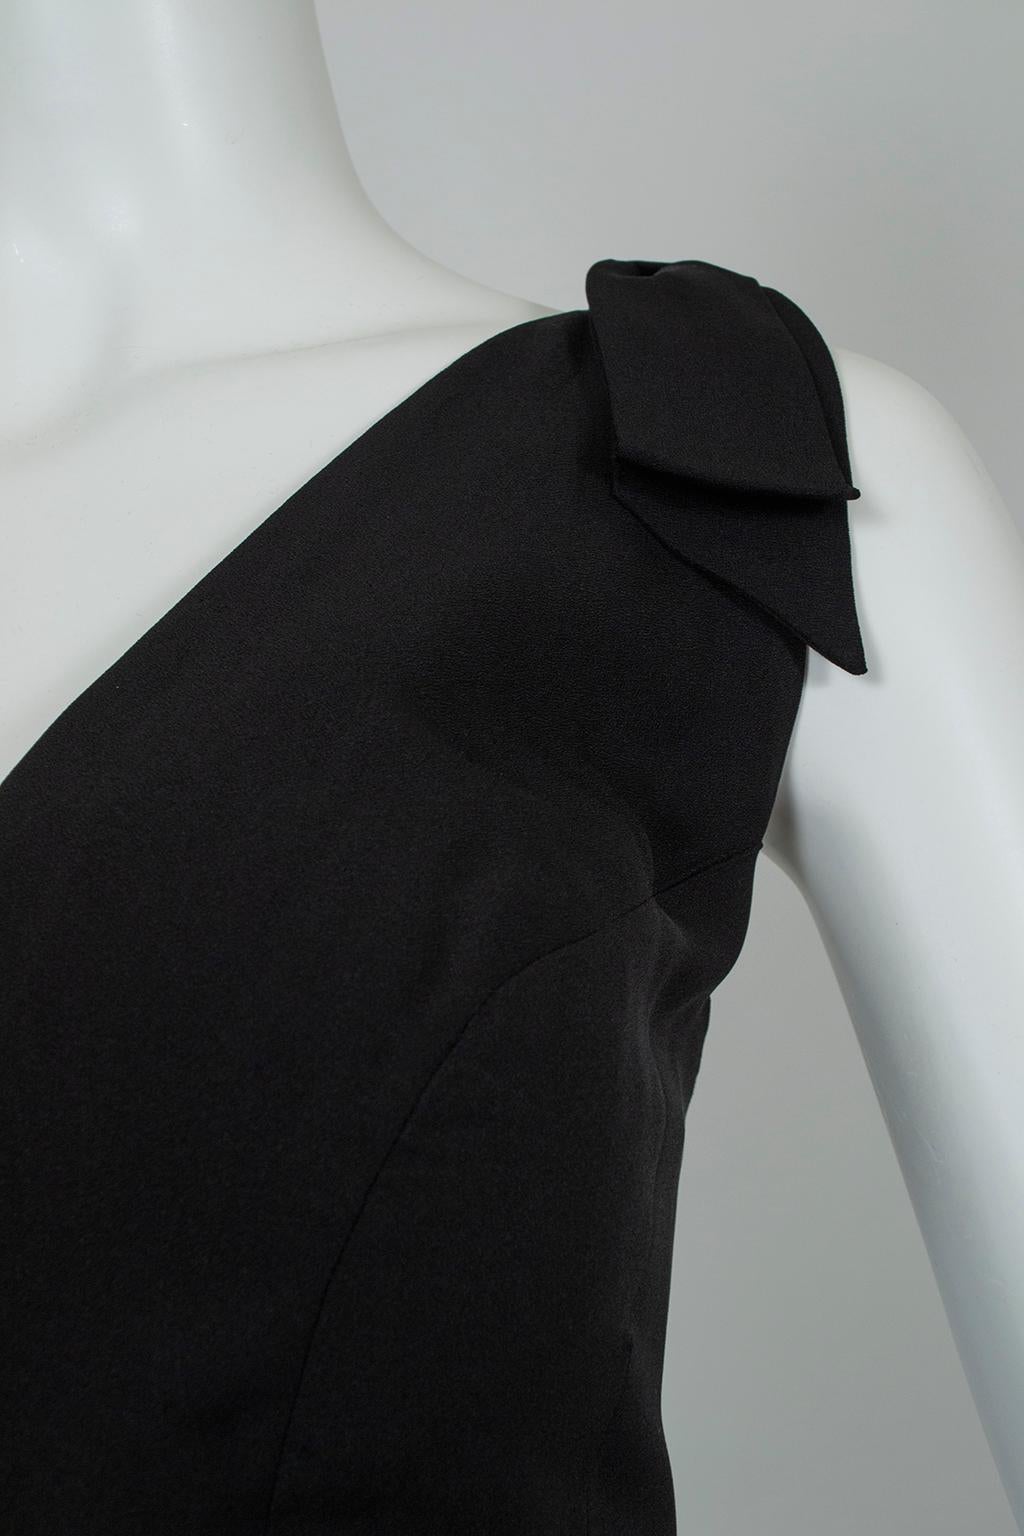 Luis Estévez Black *Larger Size* Knotted Shoulder Plunge-Front Dress - M-L, 1957 For Sale 1